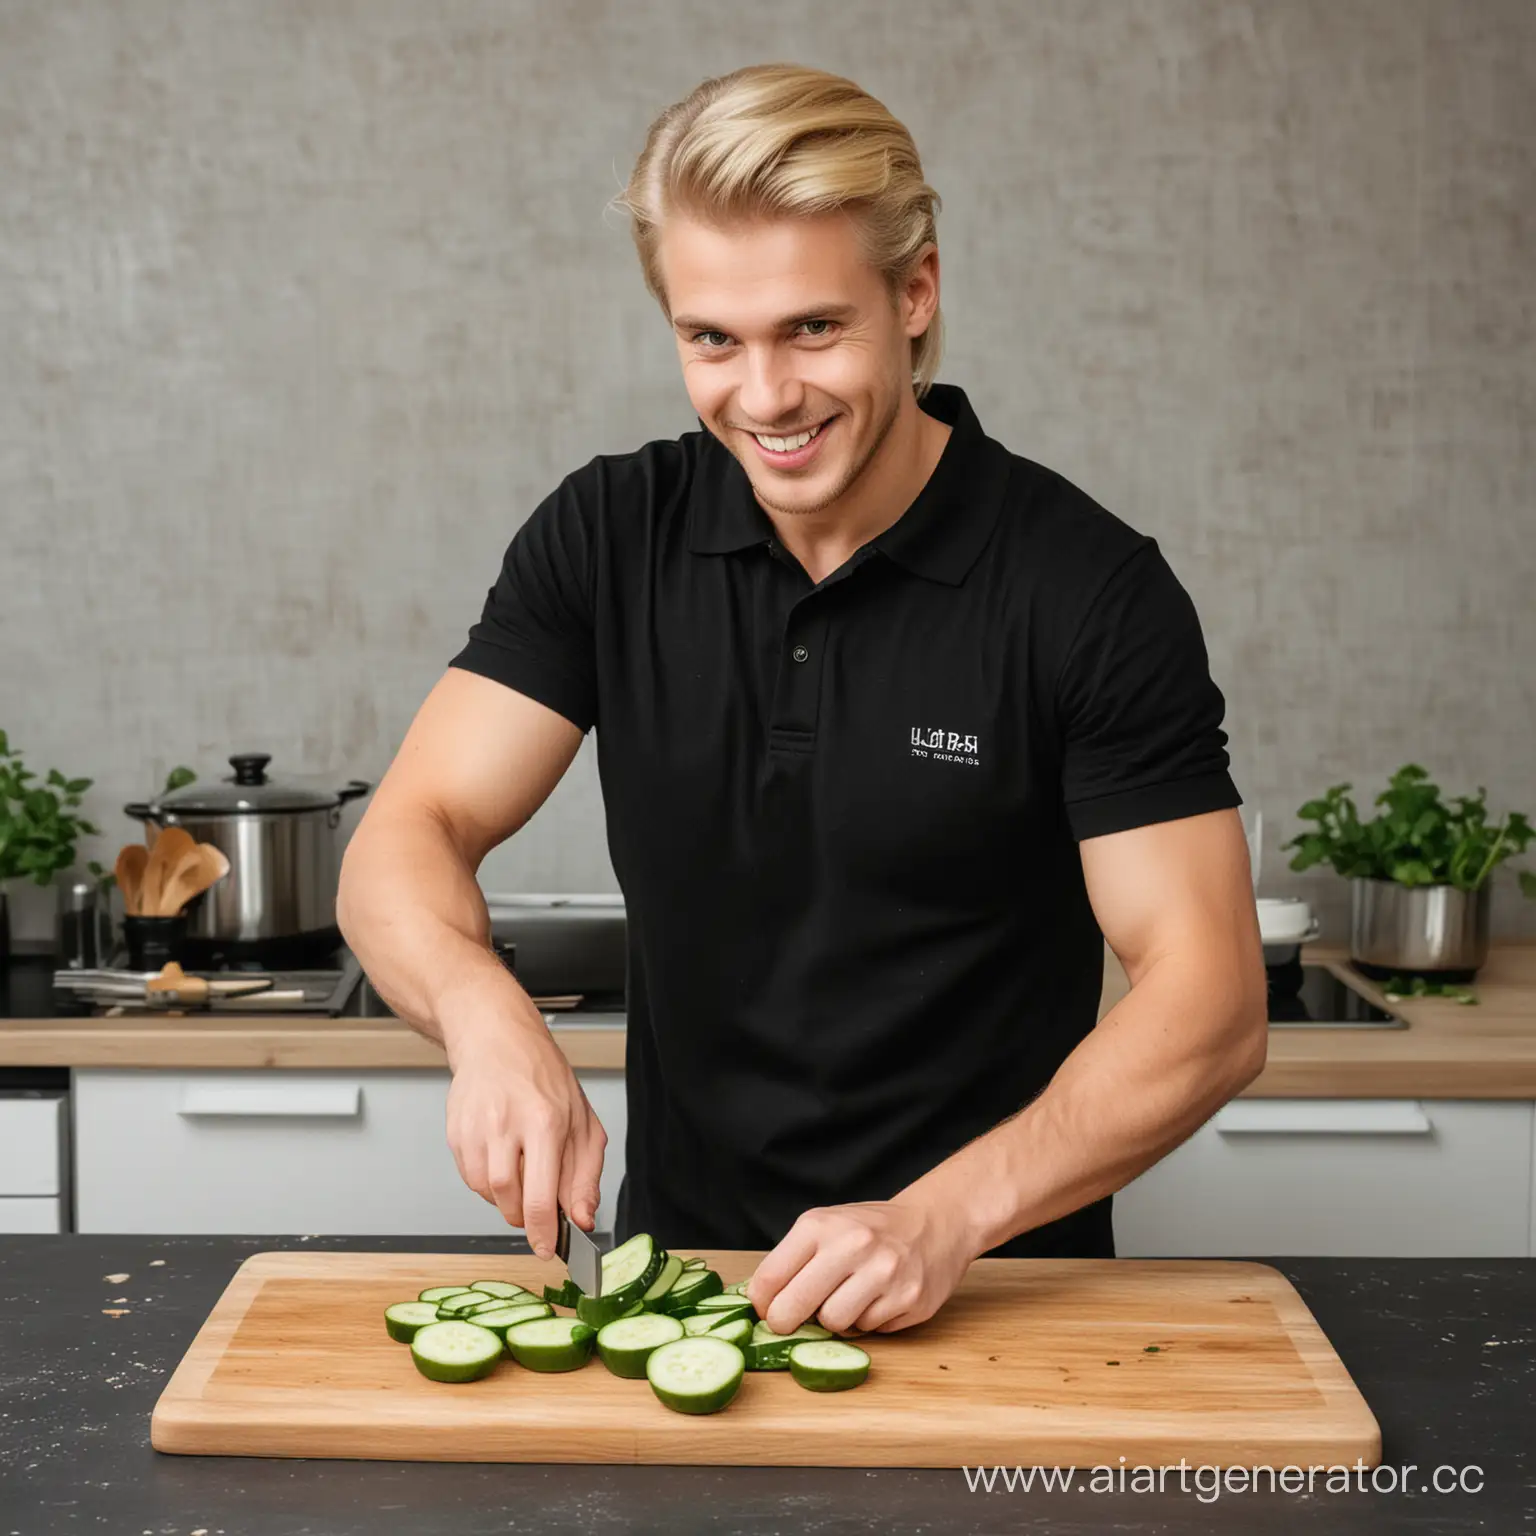 повар со светлыми волосами русский стоит в черной футболке поло улыбается режет на доске огурец 